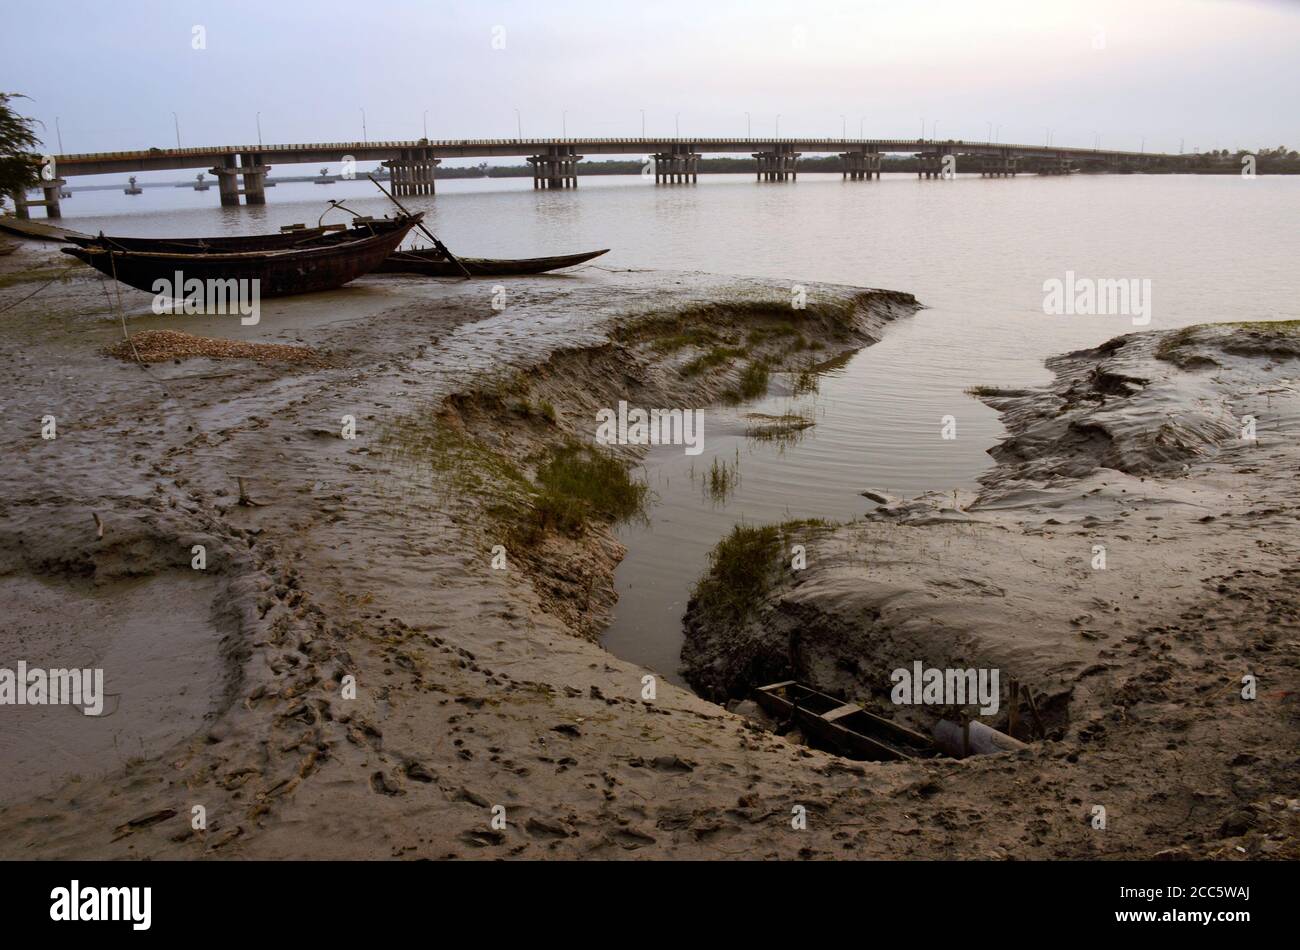 rivière matla canning west bengal inde le 3 octobre 2015: paysage nocturne à la rivière matla canning west bengal inde. Banque D'Images